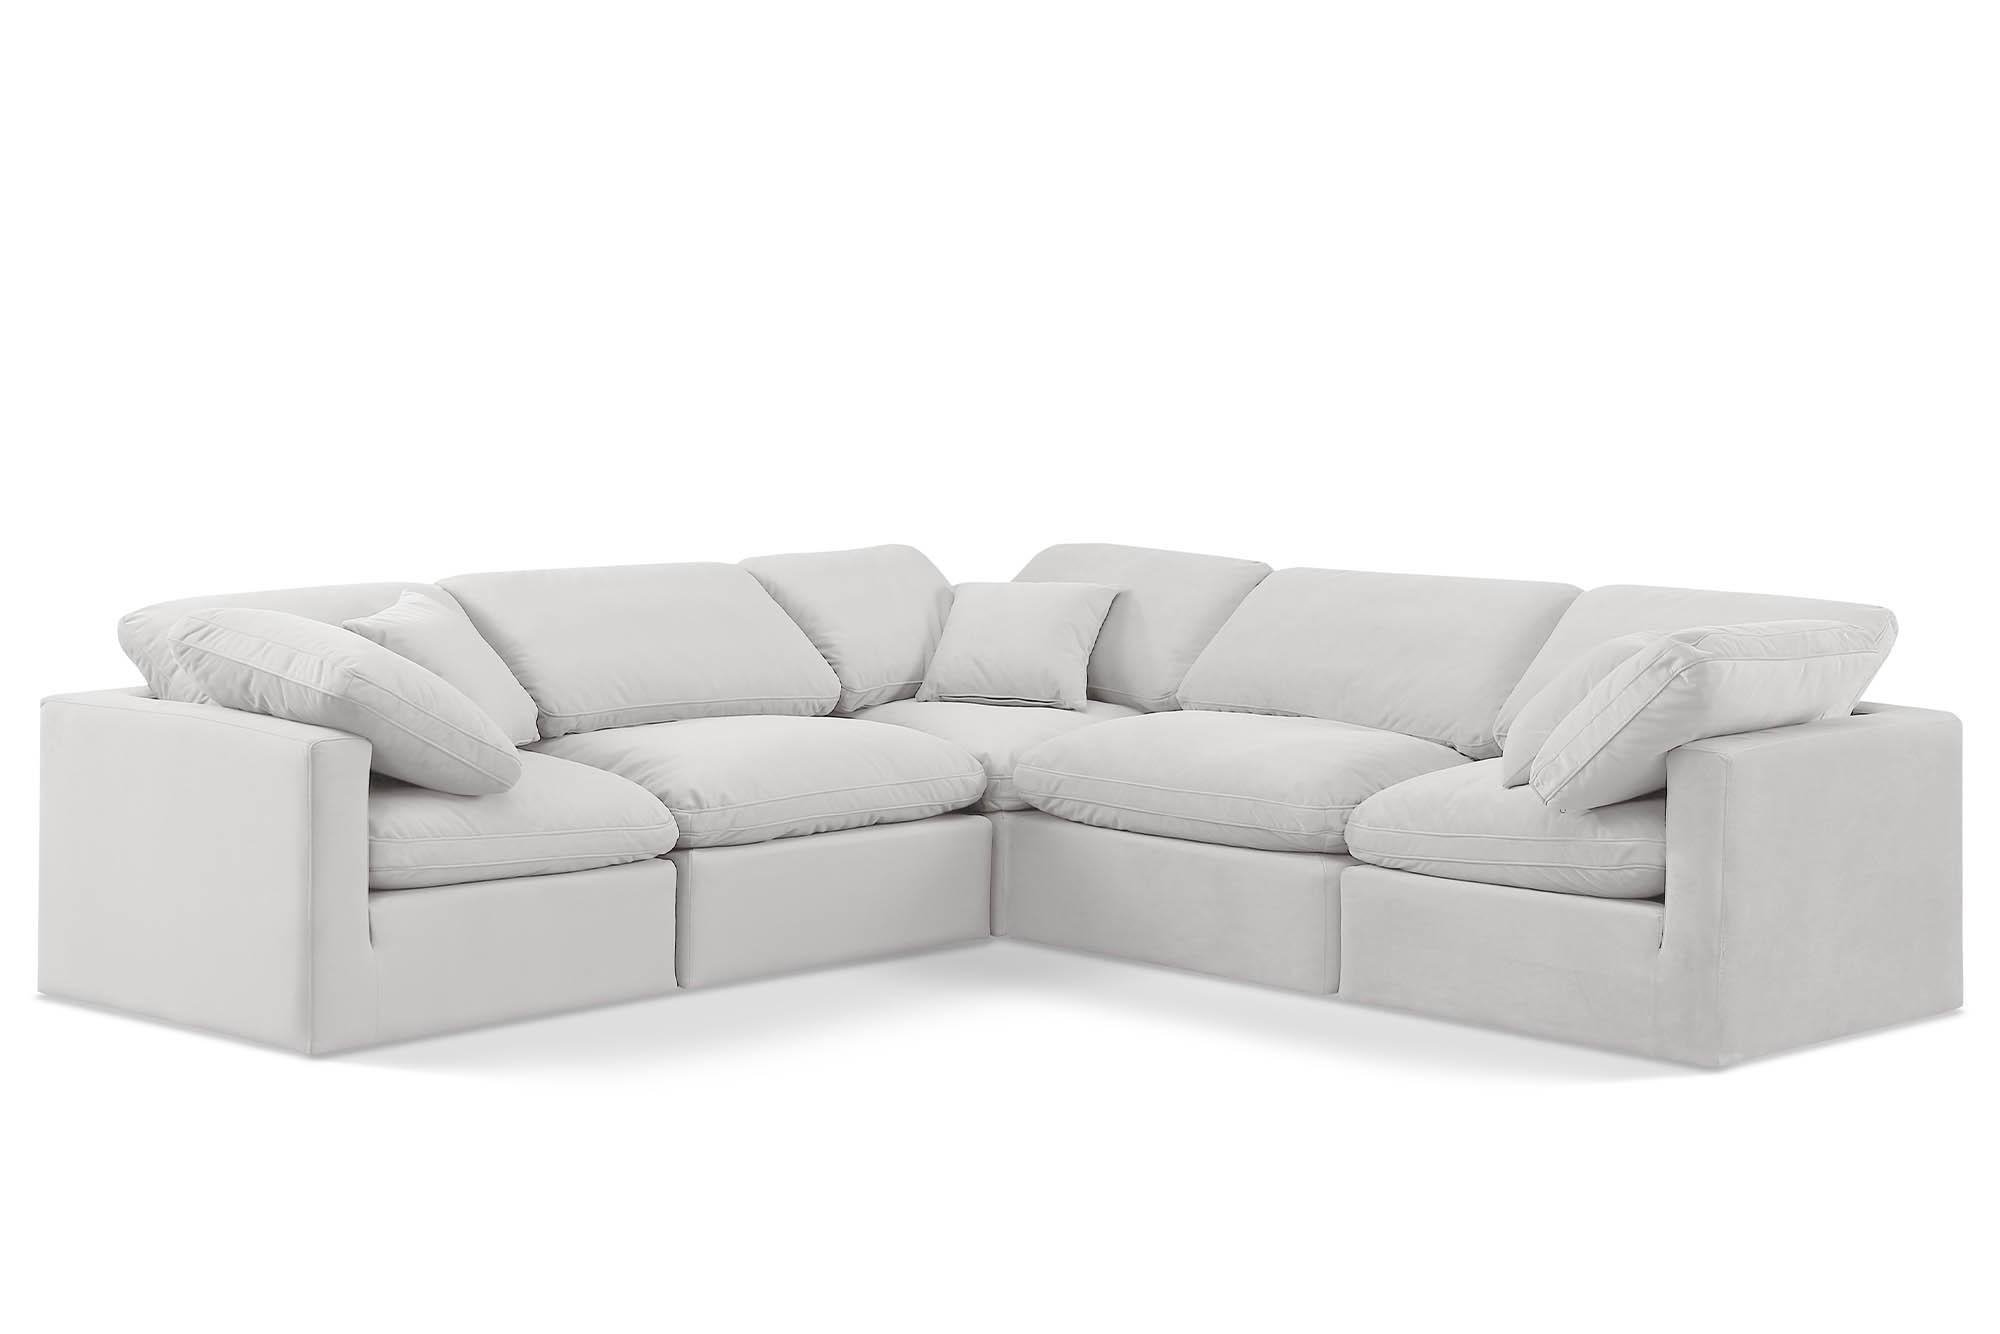 Contemporary, Modern Modular Sectional Sofa INDULGE 147Cream-Sec5C 147Cream-Sec5C in Cream Velvet